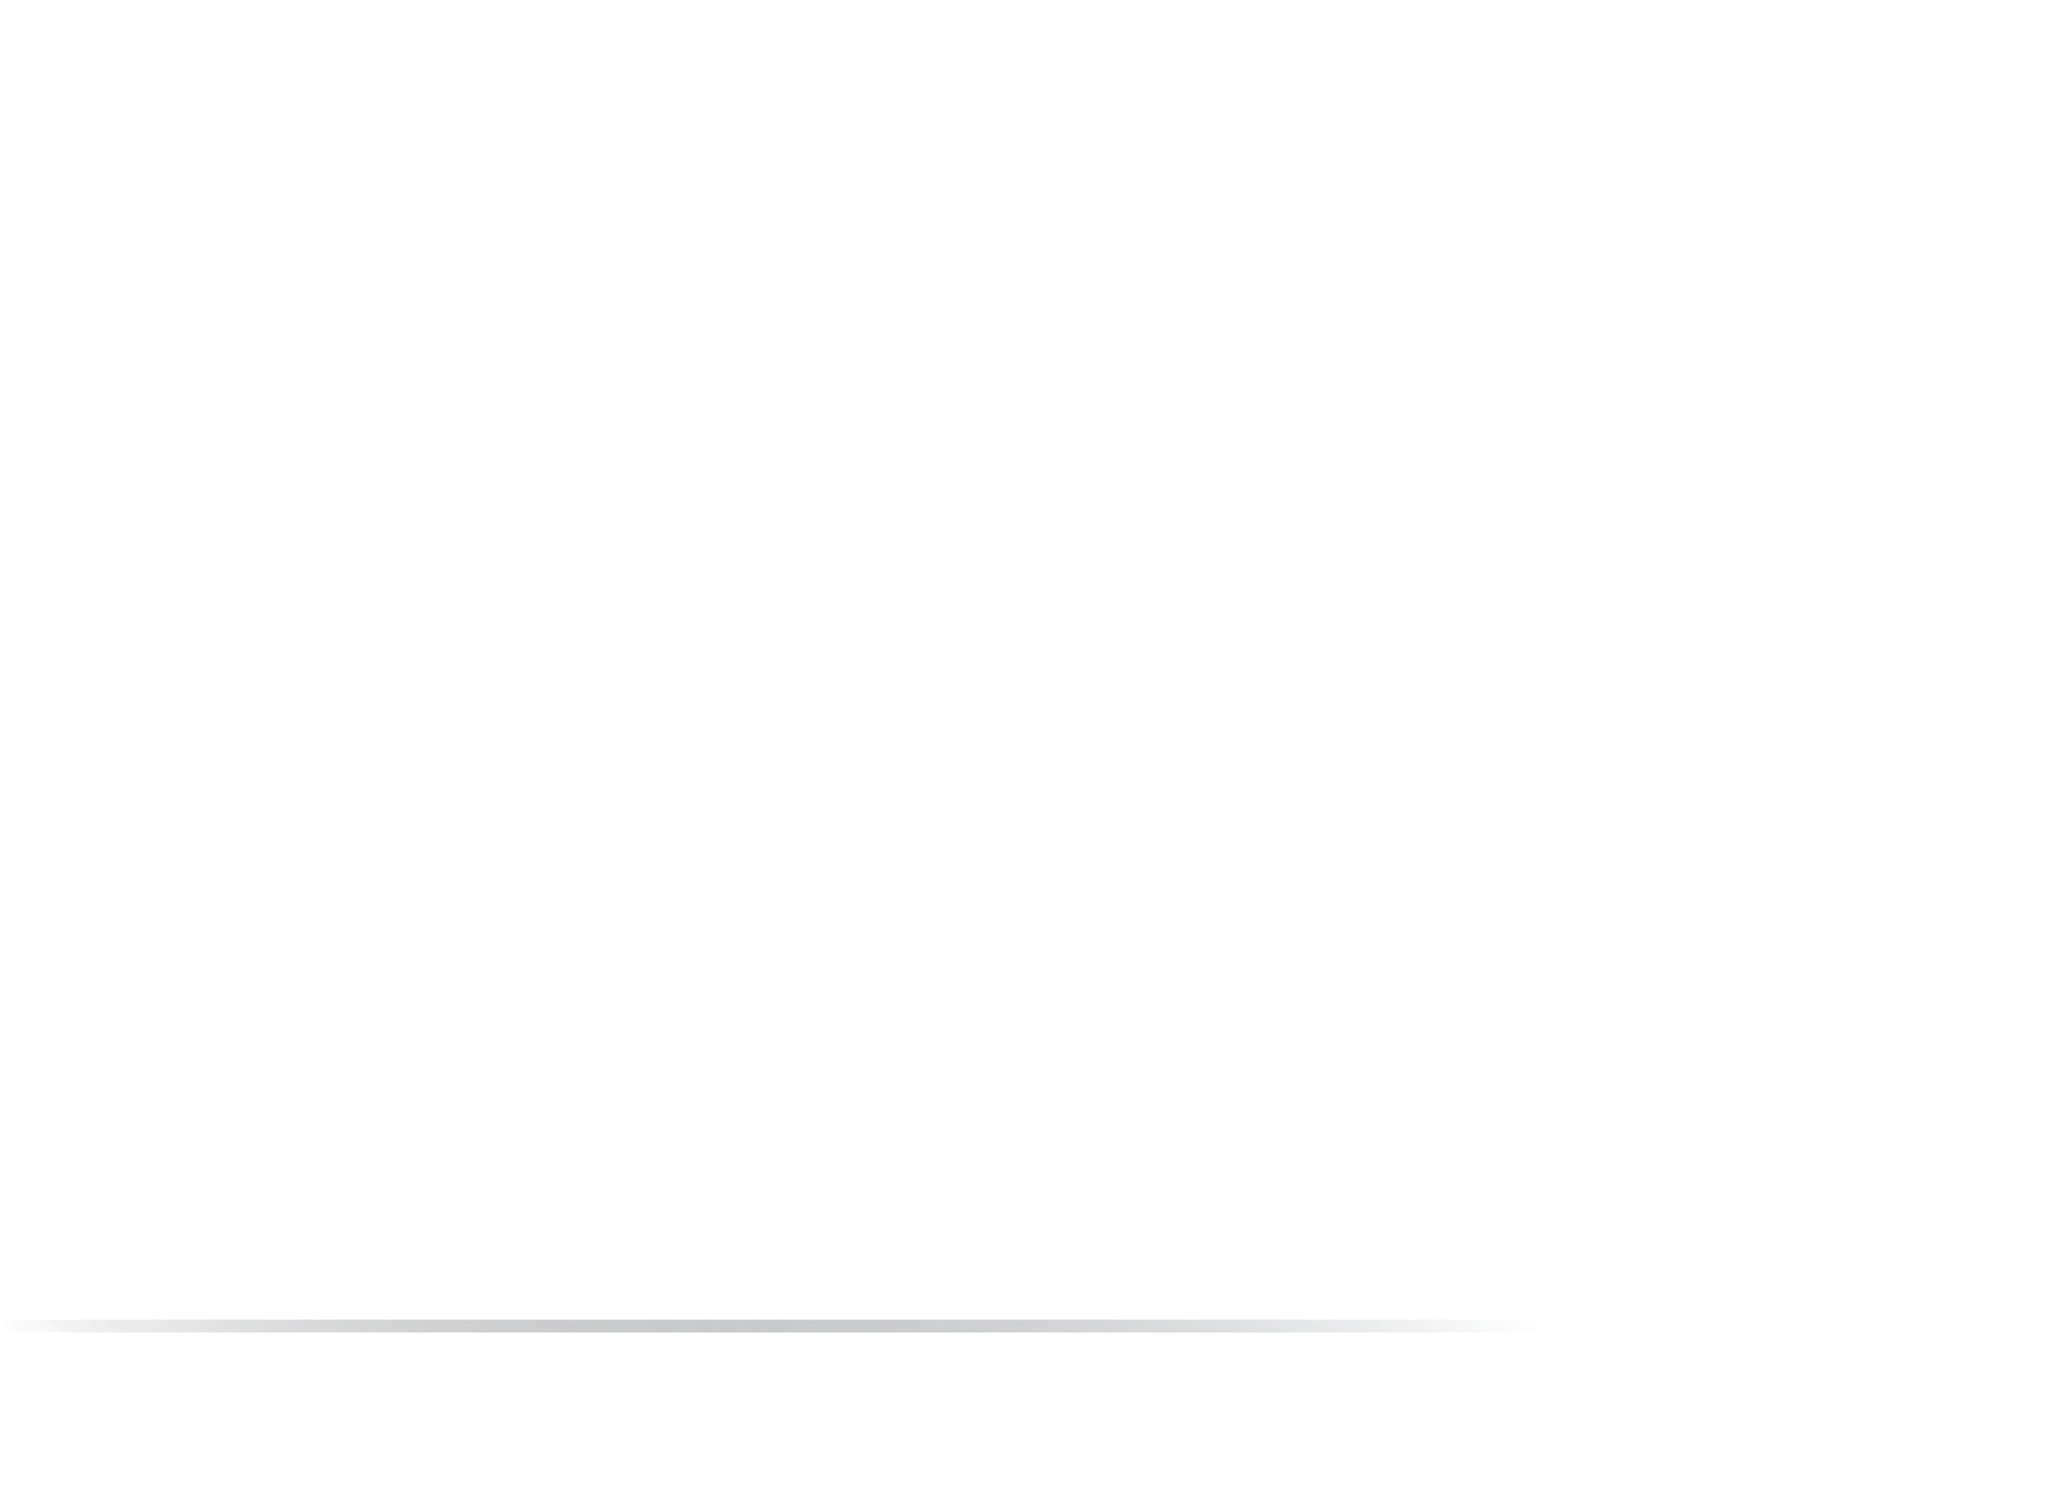 Blade Adv